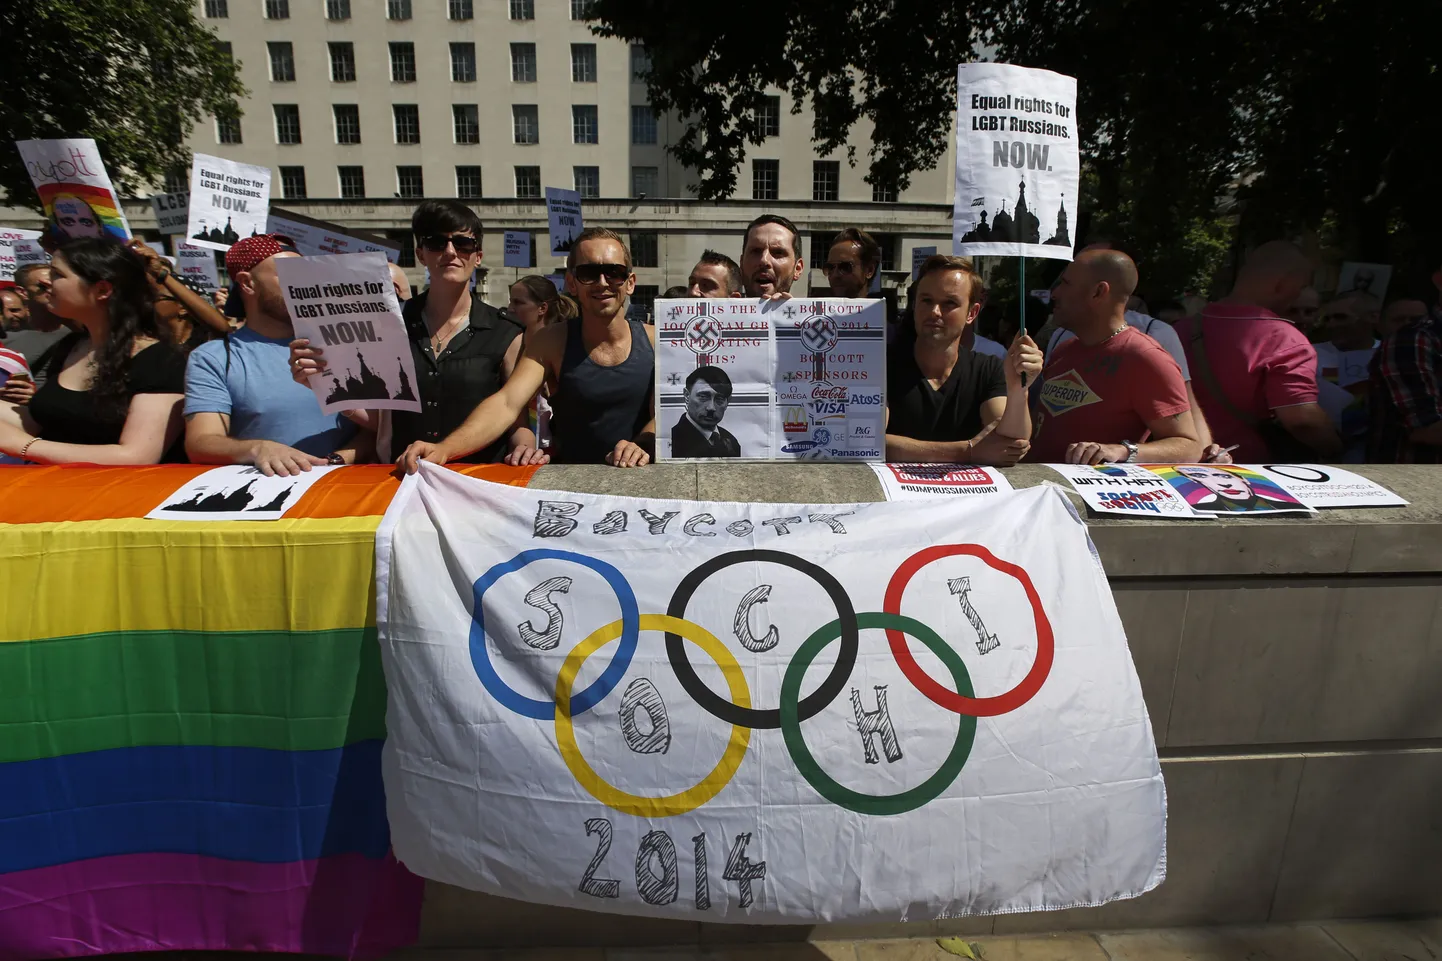 Активисты организаций секс-меньшинств митингуют в Лондоне против антигейского закона РФ и призывают к бойкоту сочинской Олимпиады.